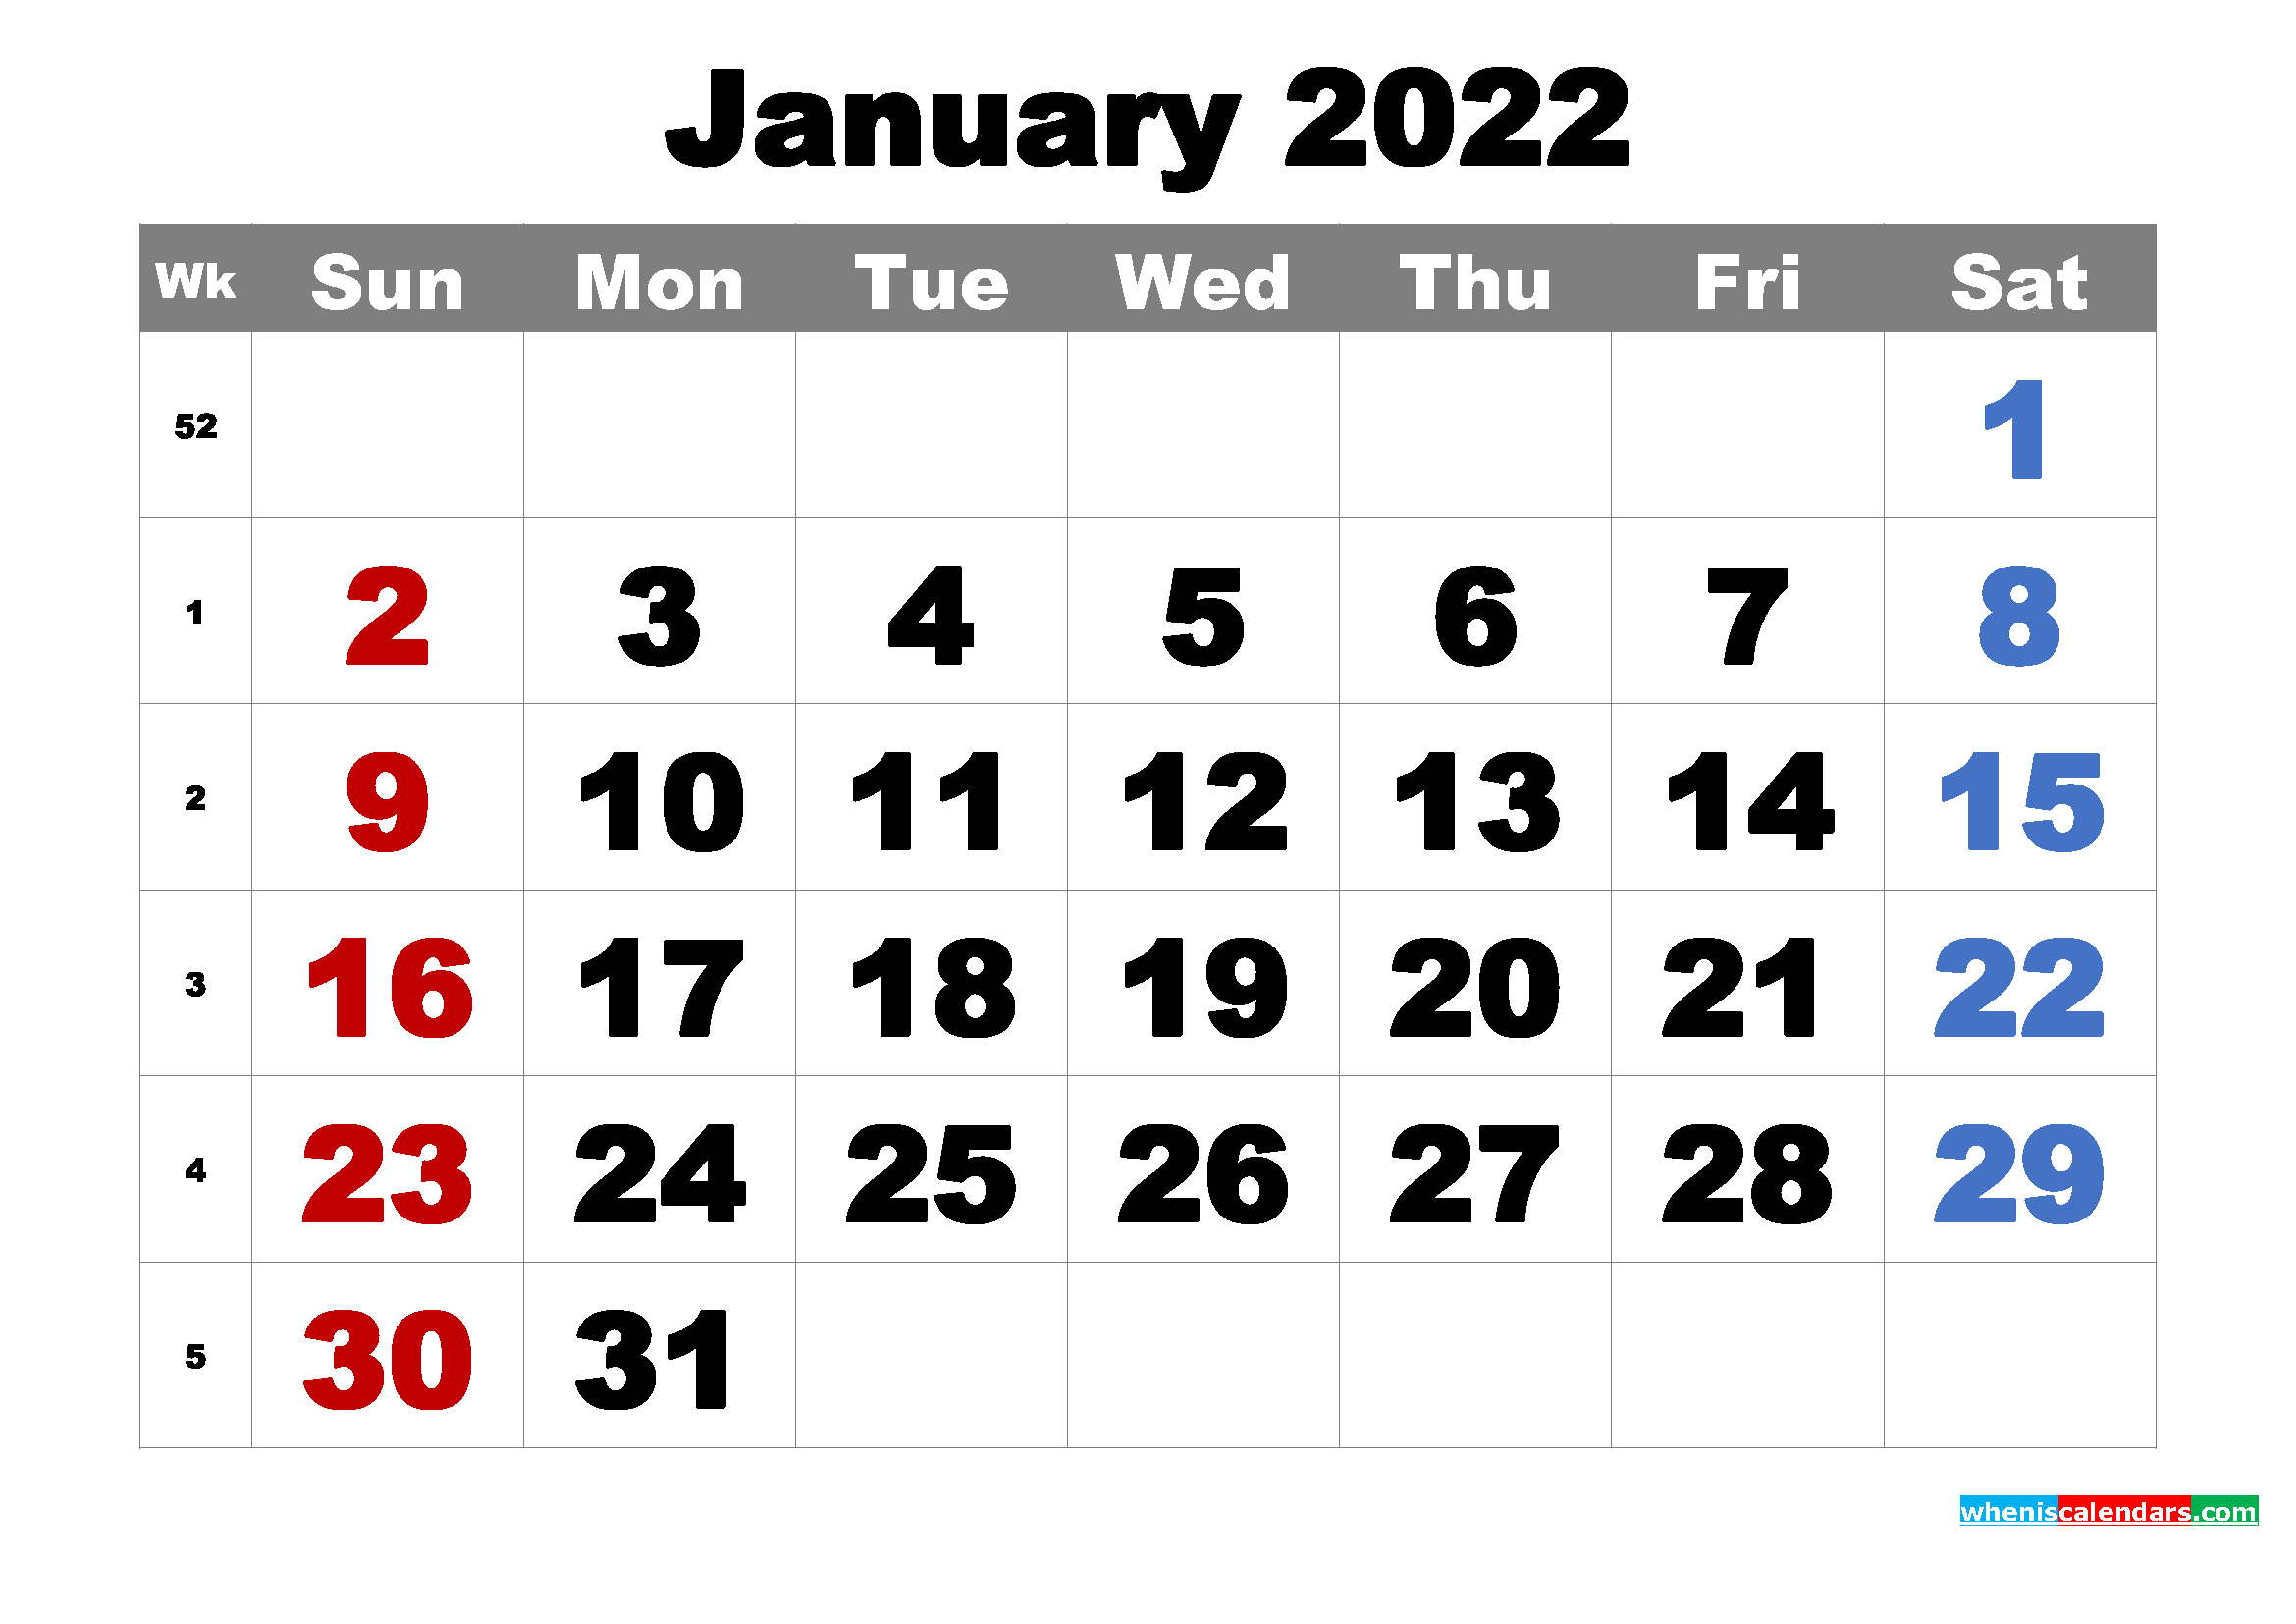 Top 20 2022 ajandası pdf en iyi 2022